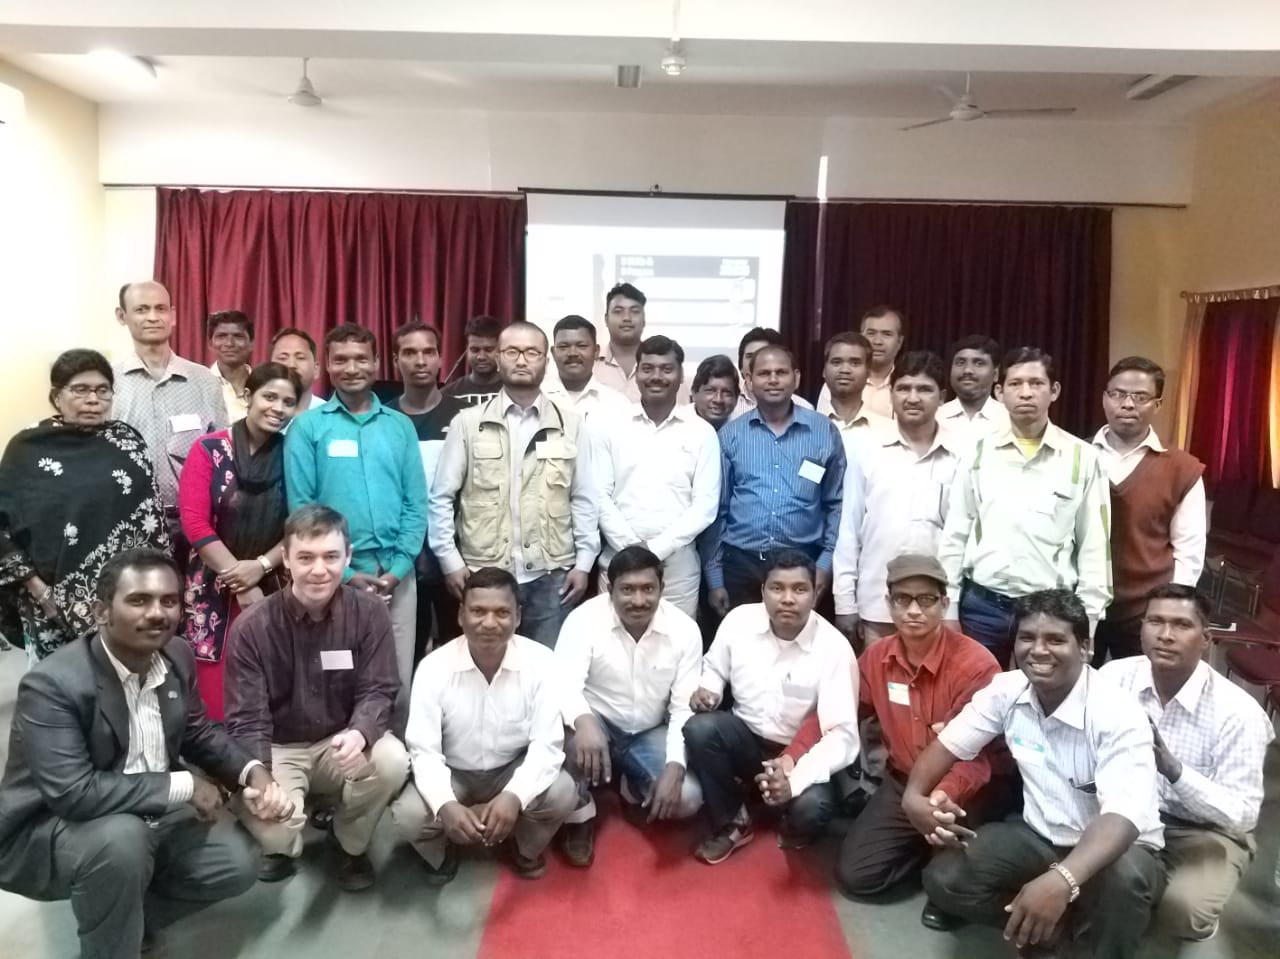 Feb 2019 India Discipleship Seminar 02.jpeg